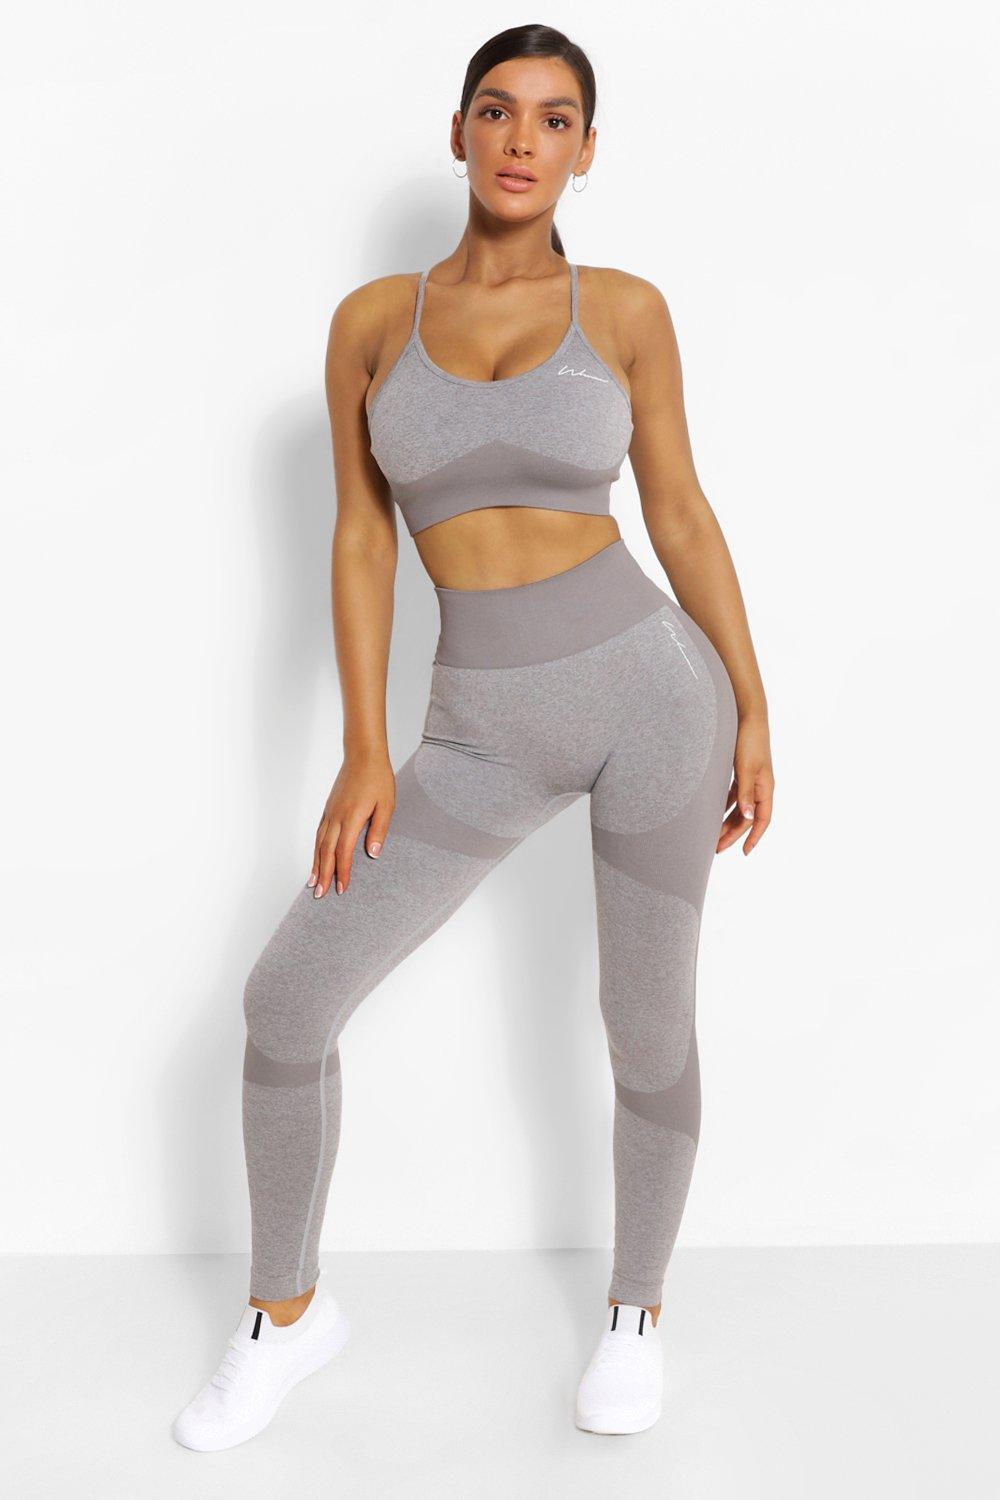 Women's Grey Gym Leggings, Gym Clothing